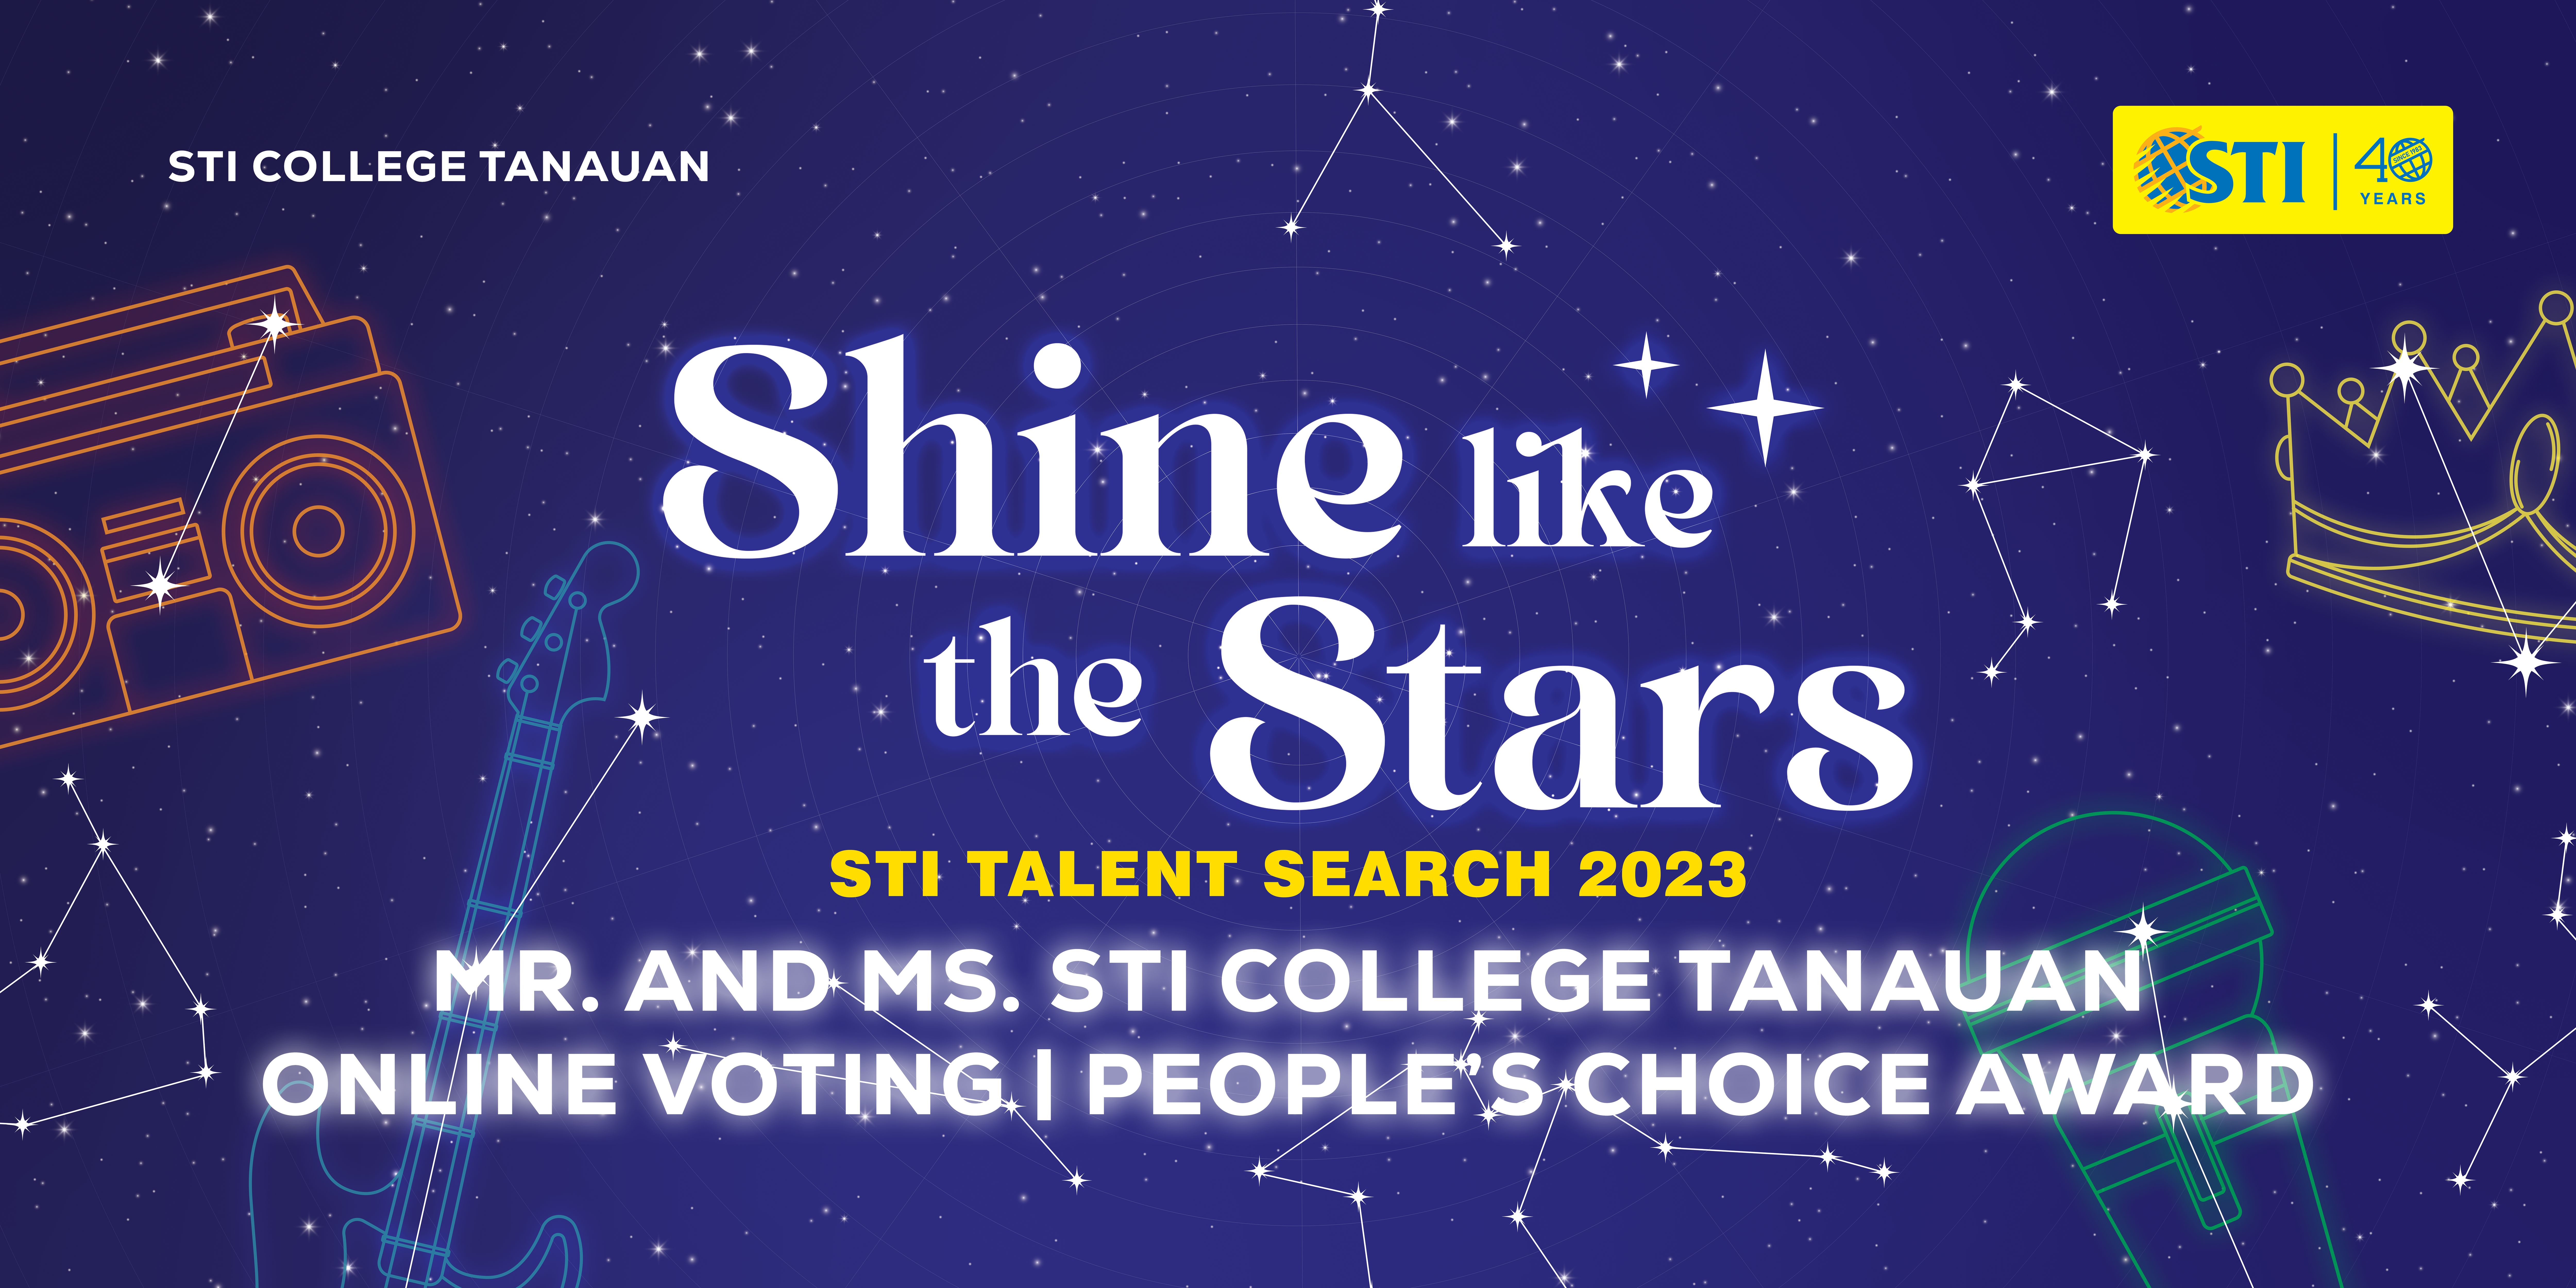 Sti talent search 2023 pvbanner